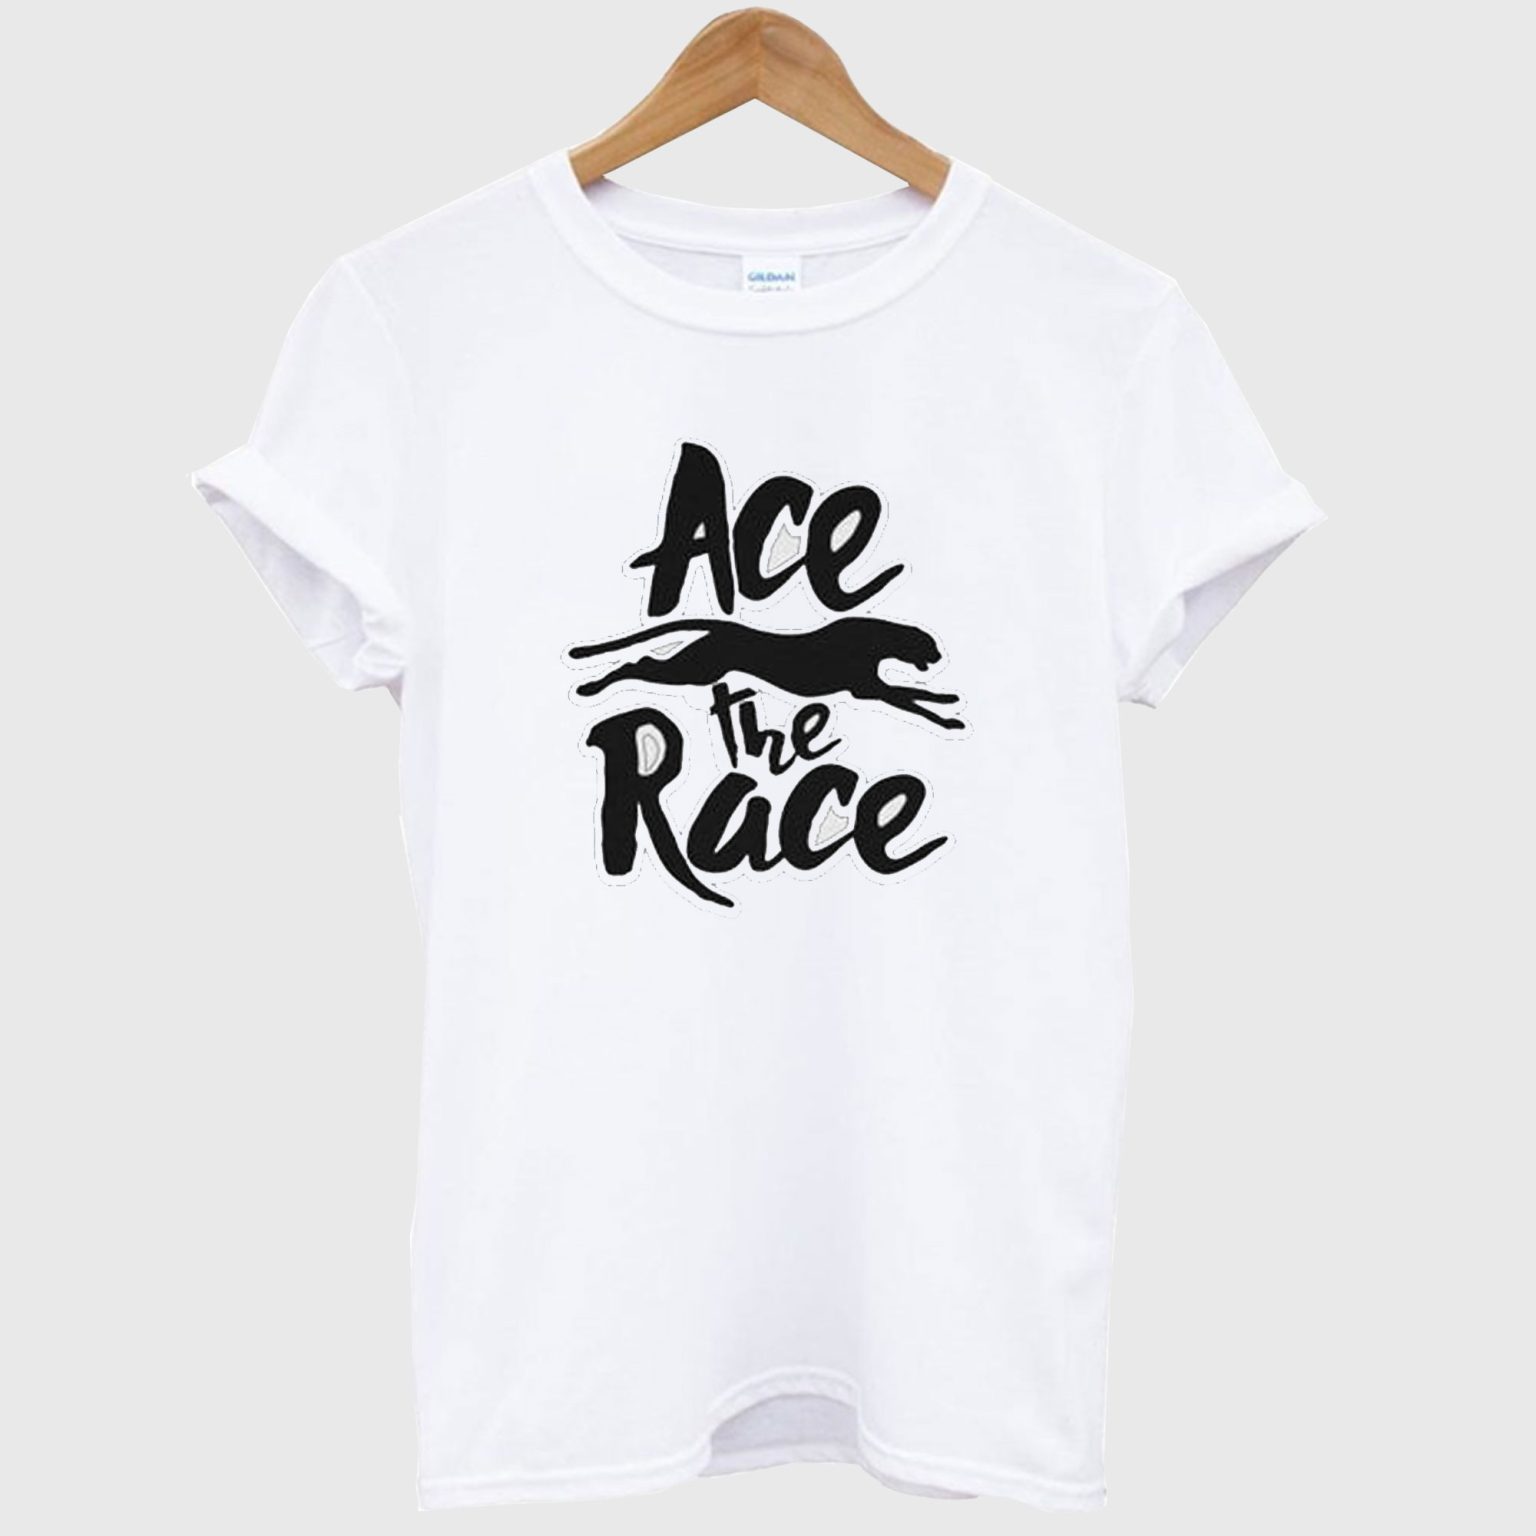 Ace the Race T Shirt